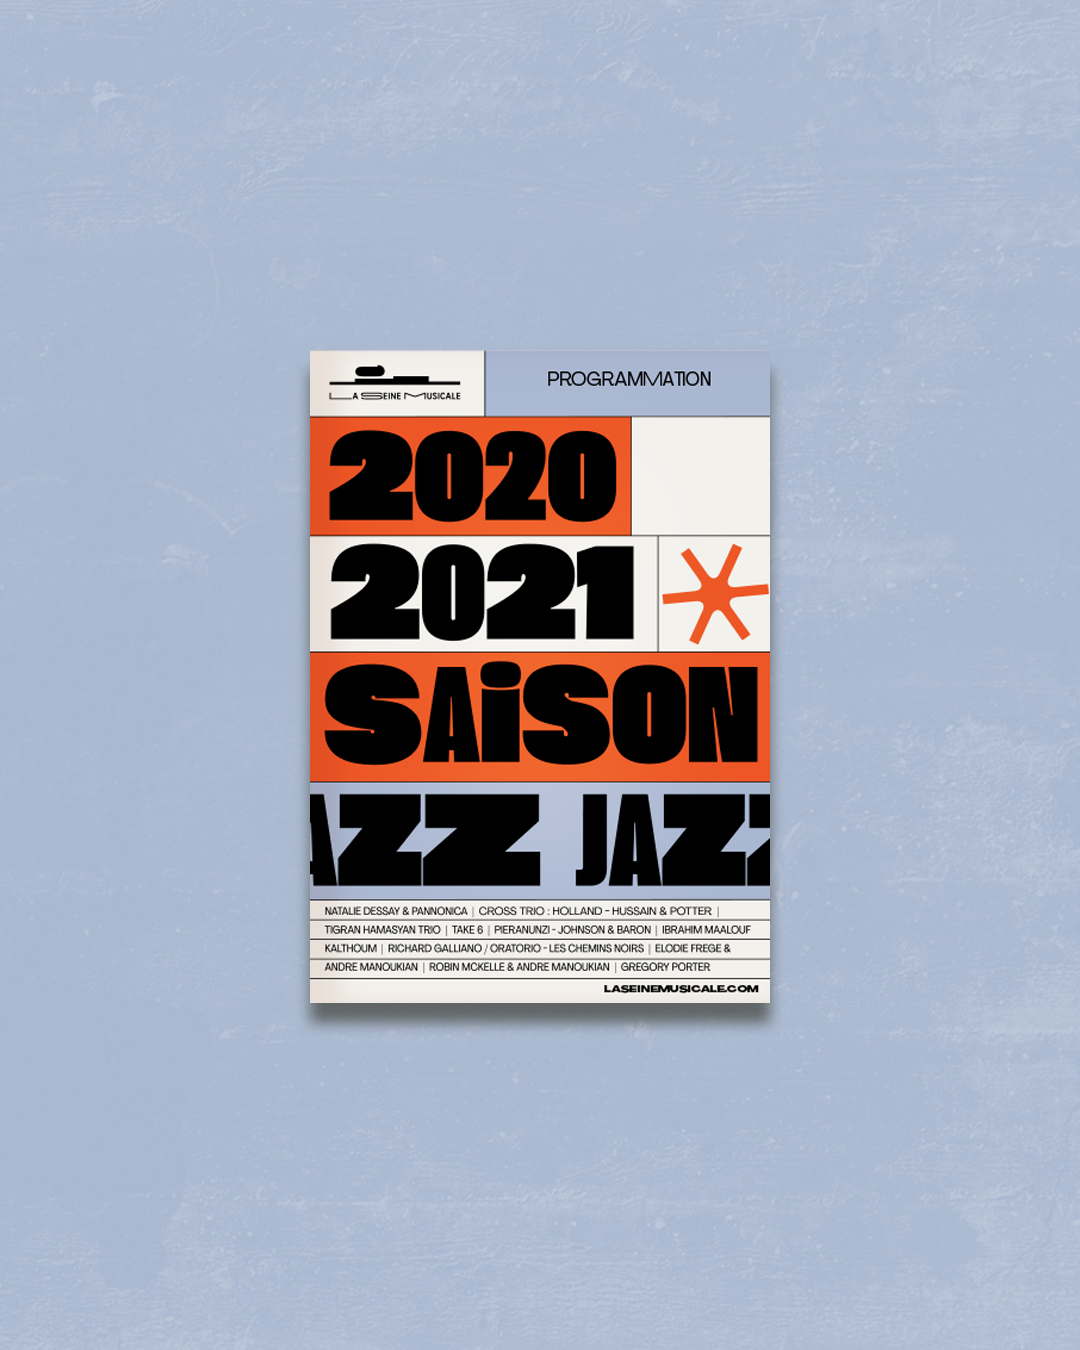 JESSY MOREIRA | SEINE MUSICALE JAZZ 2020 2021